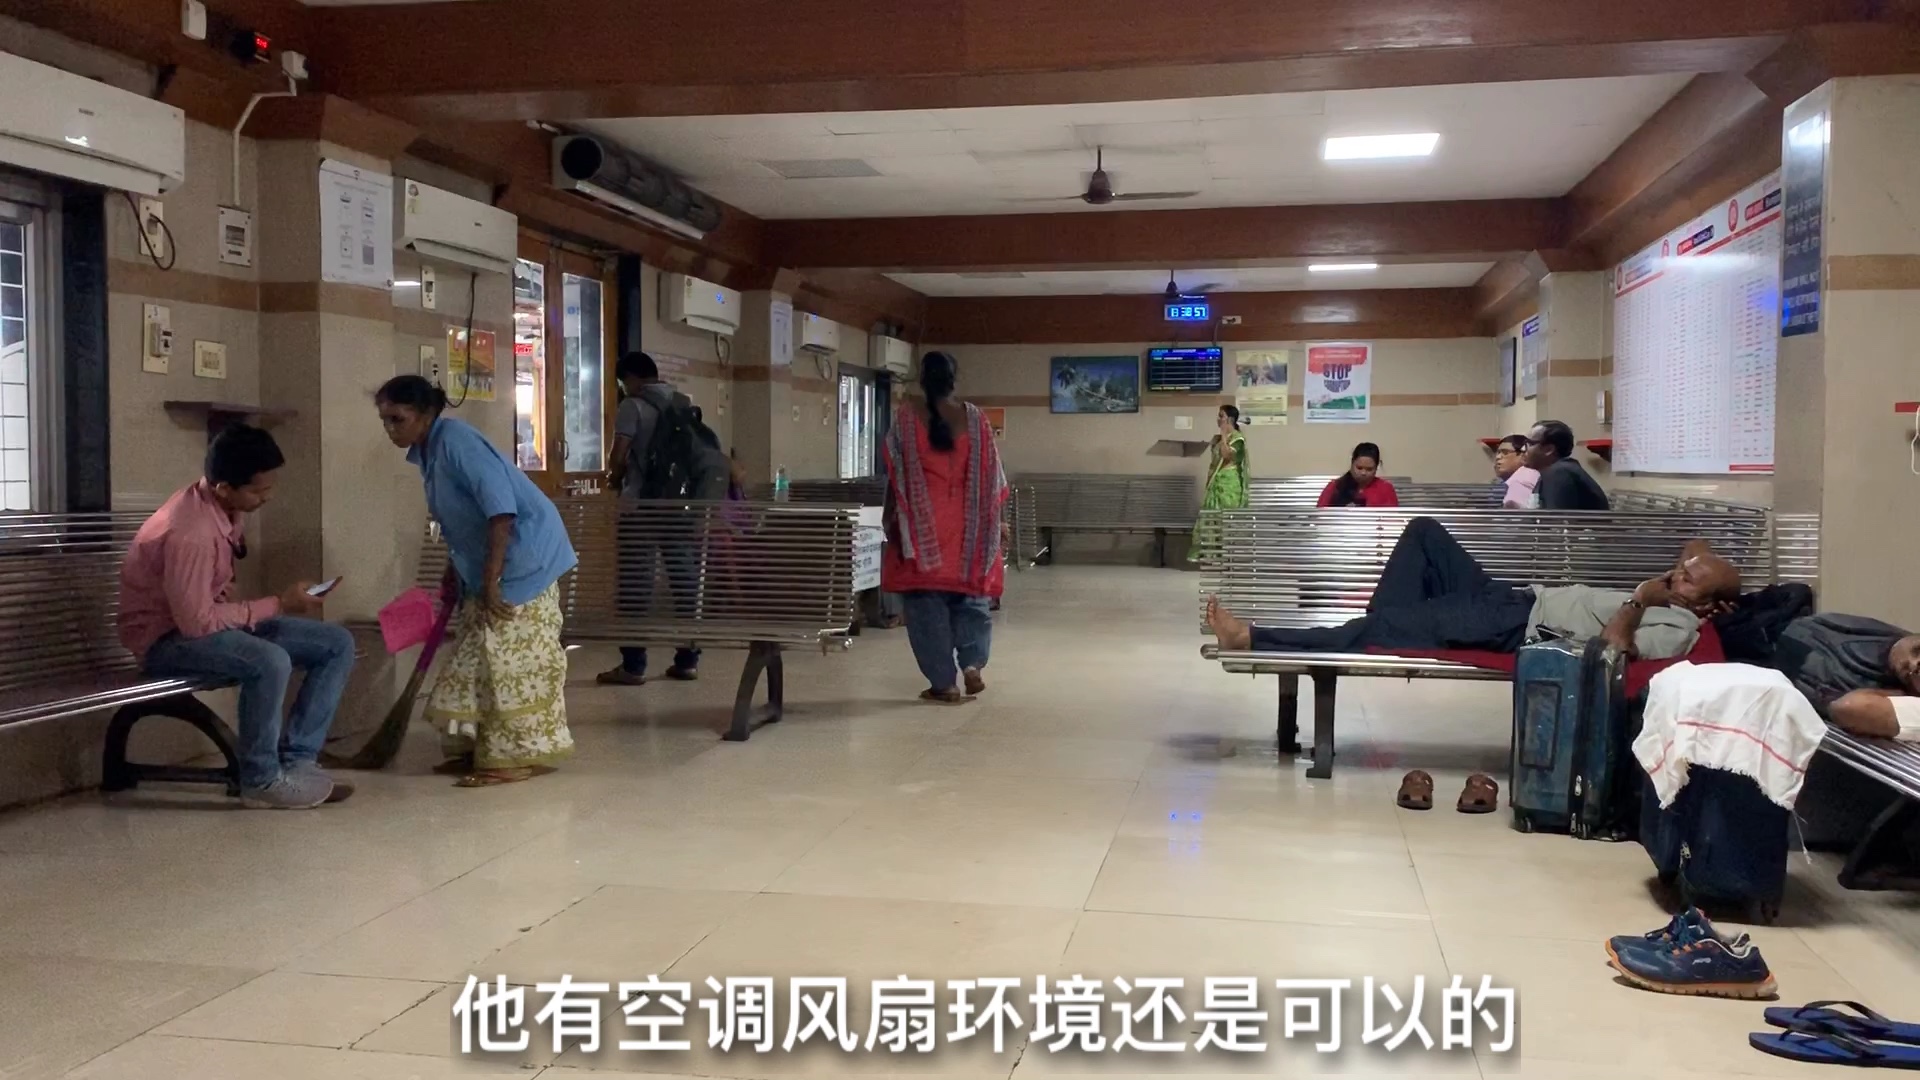 印度火车站的贵宾室，中国面孔不用登记直接进入，这环境如何？